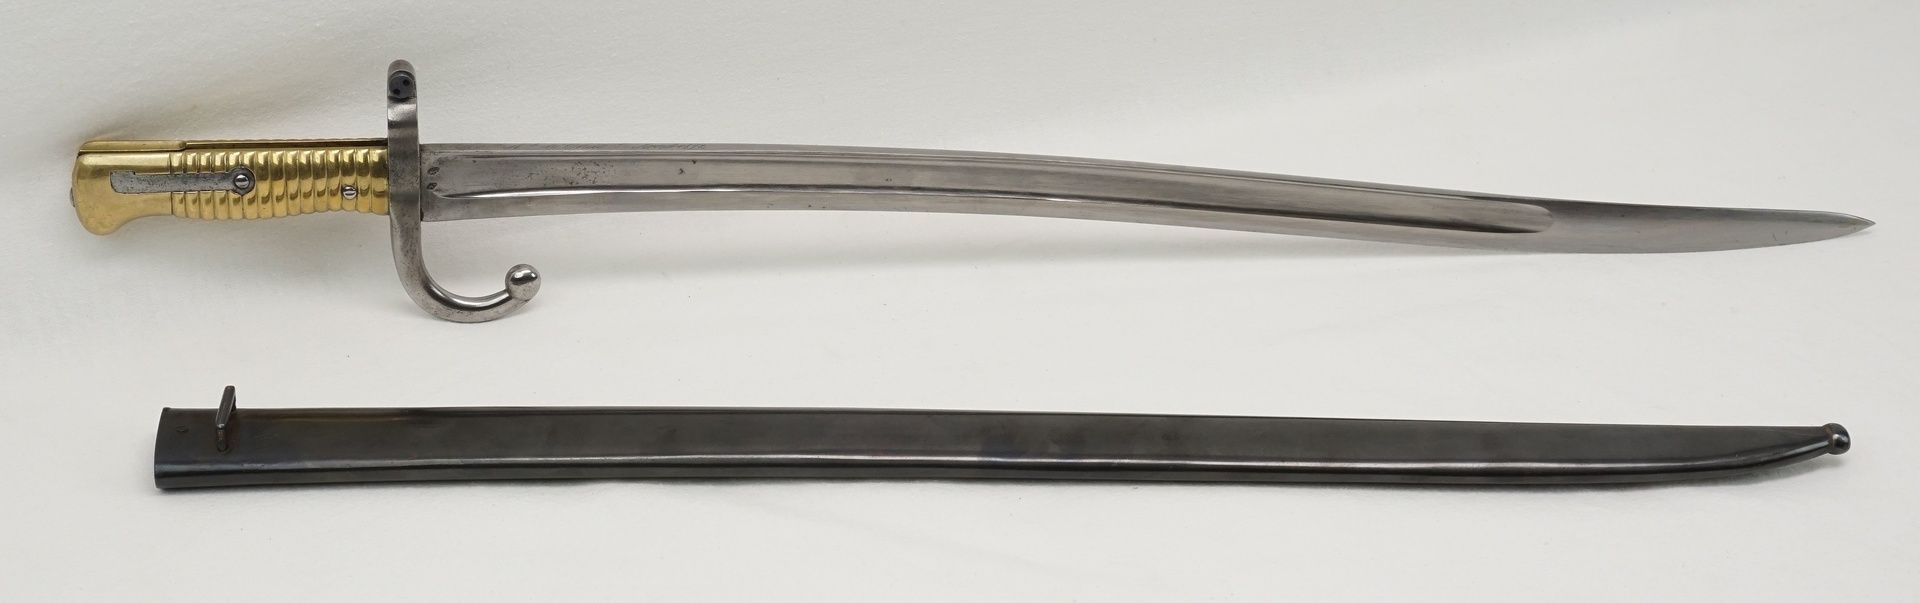 Chassepot Bajonett, 1872mit Hersteller auf dem Klingenrücken, Messing, Stahl, Nummerngleich, Scheide